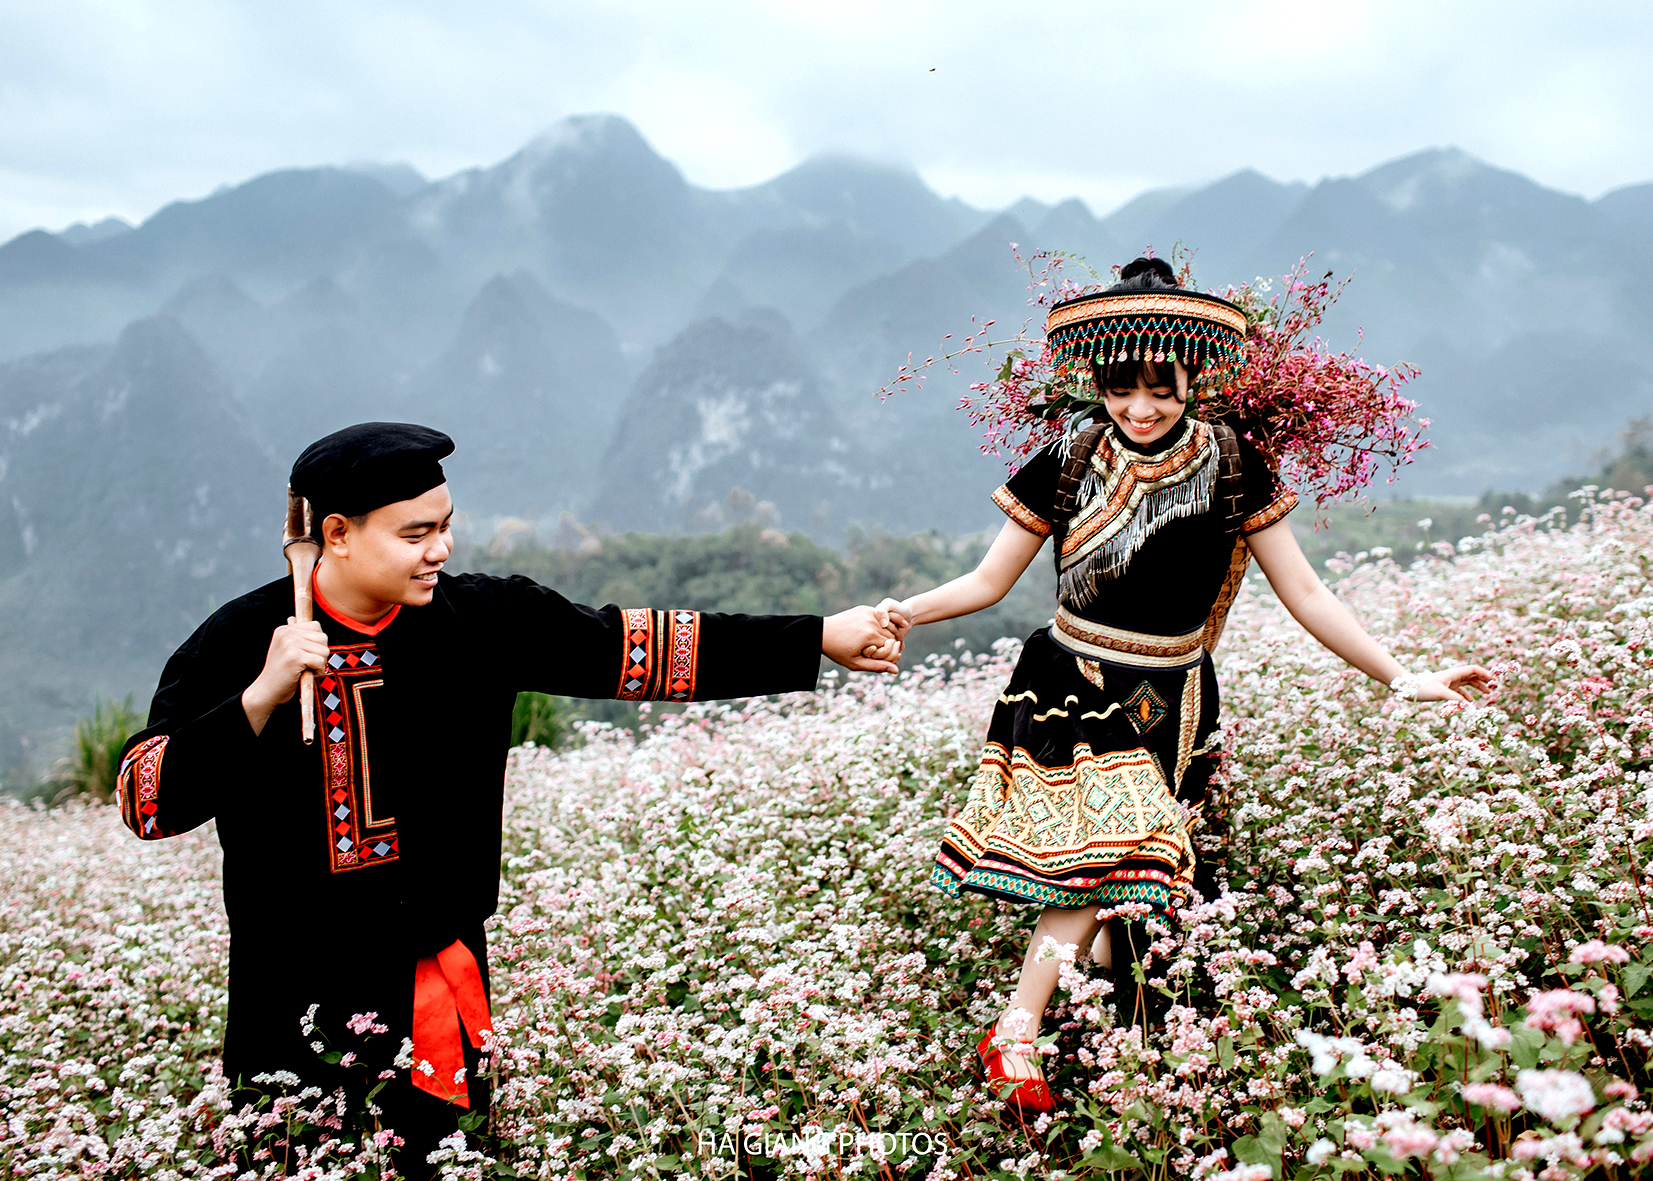 Trang phục mang màu sắc các dân tộc trên Cao nguyên đá Đồng Văn luôn được các cặp đôi lựa chọn để lưu vào bộ ảnh cưới của mình.